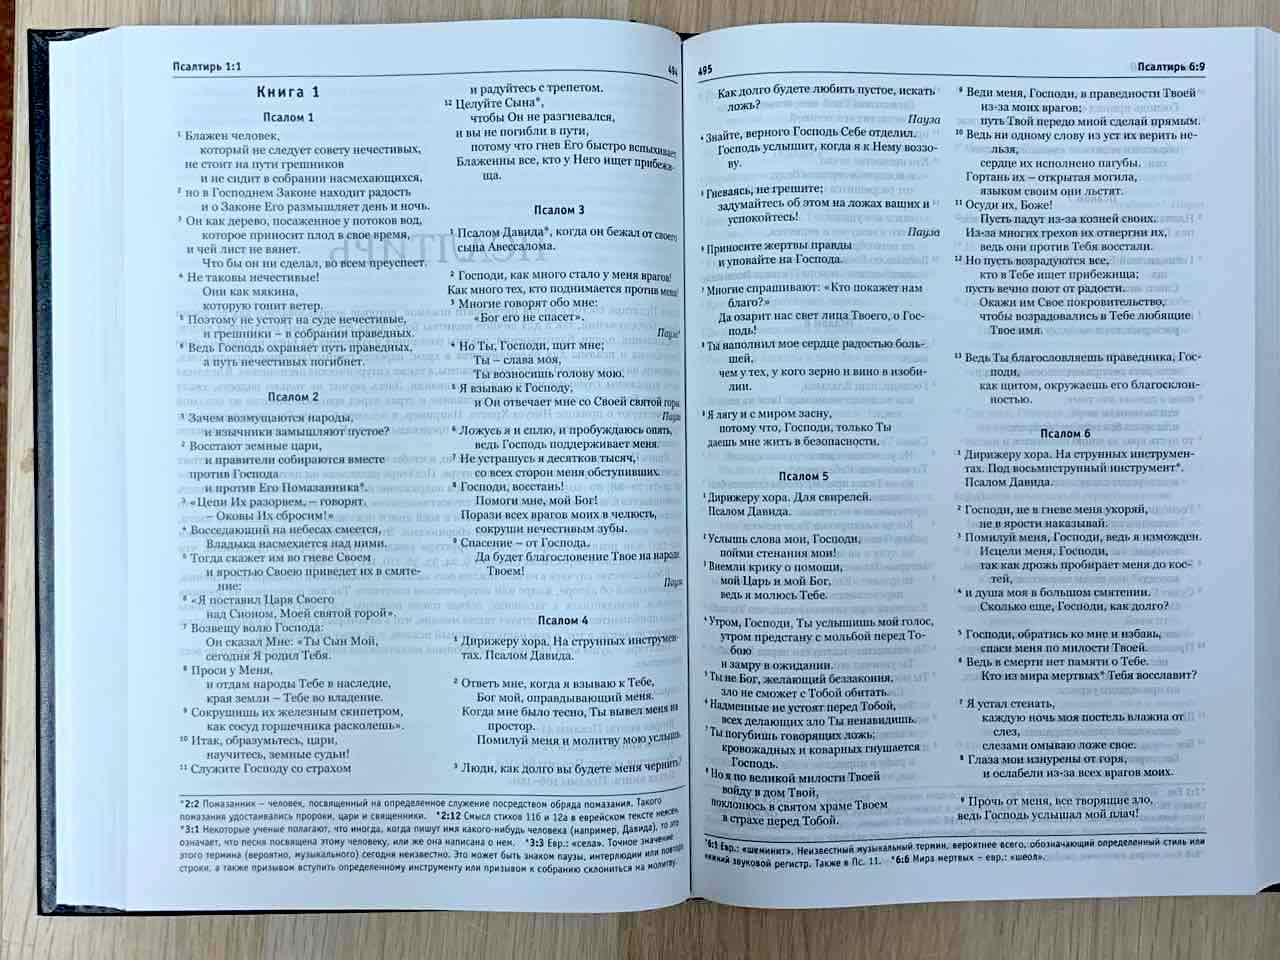 Библия в современном переводе (новый русский перевод) 073 цвет синий